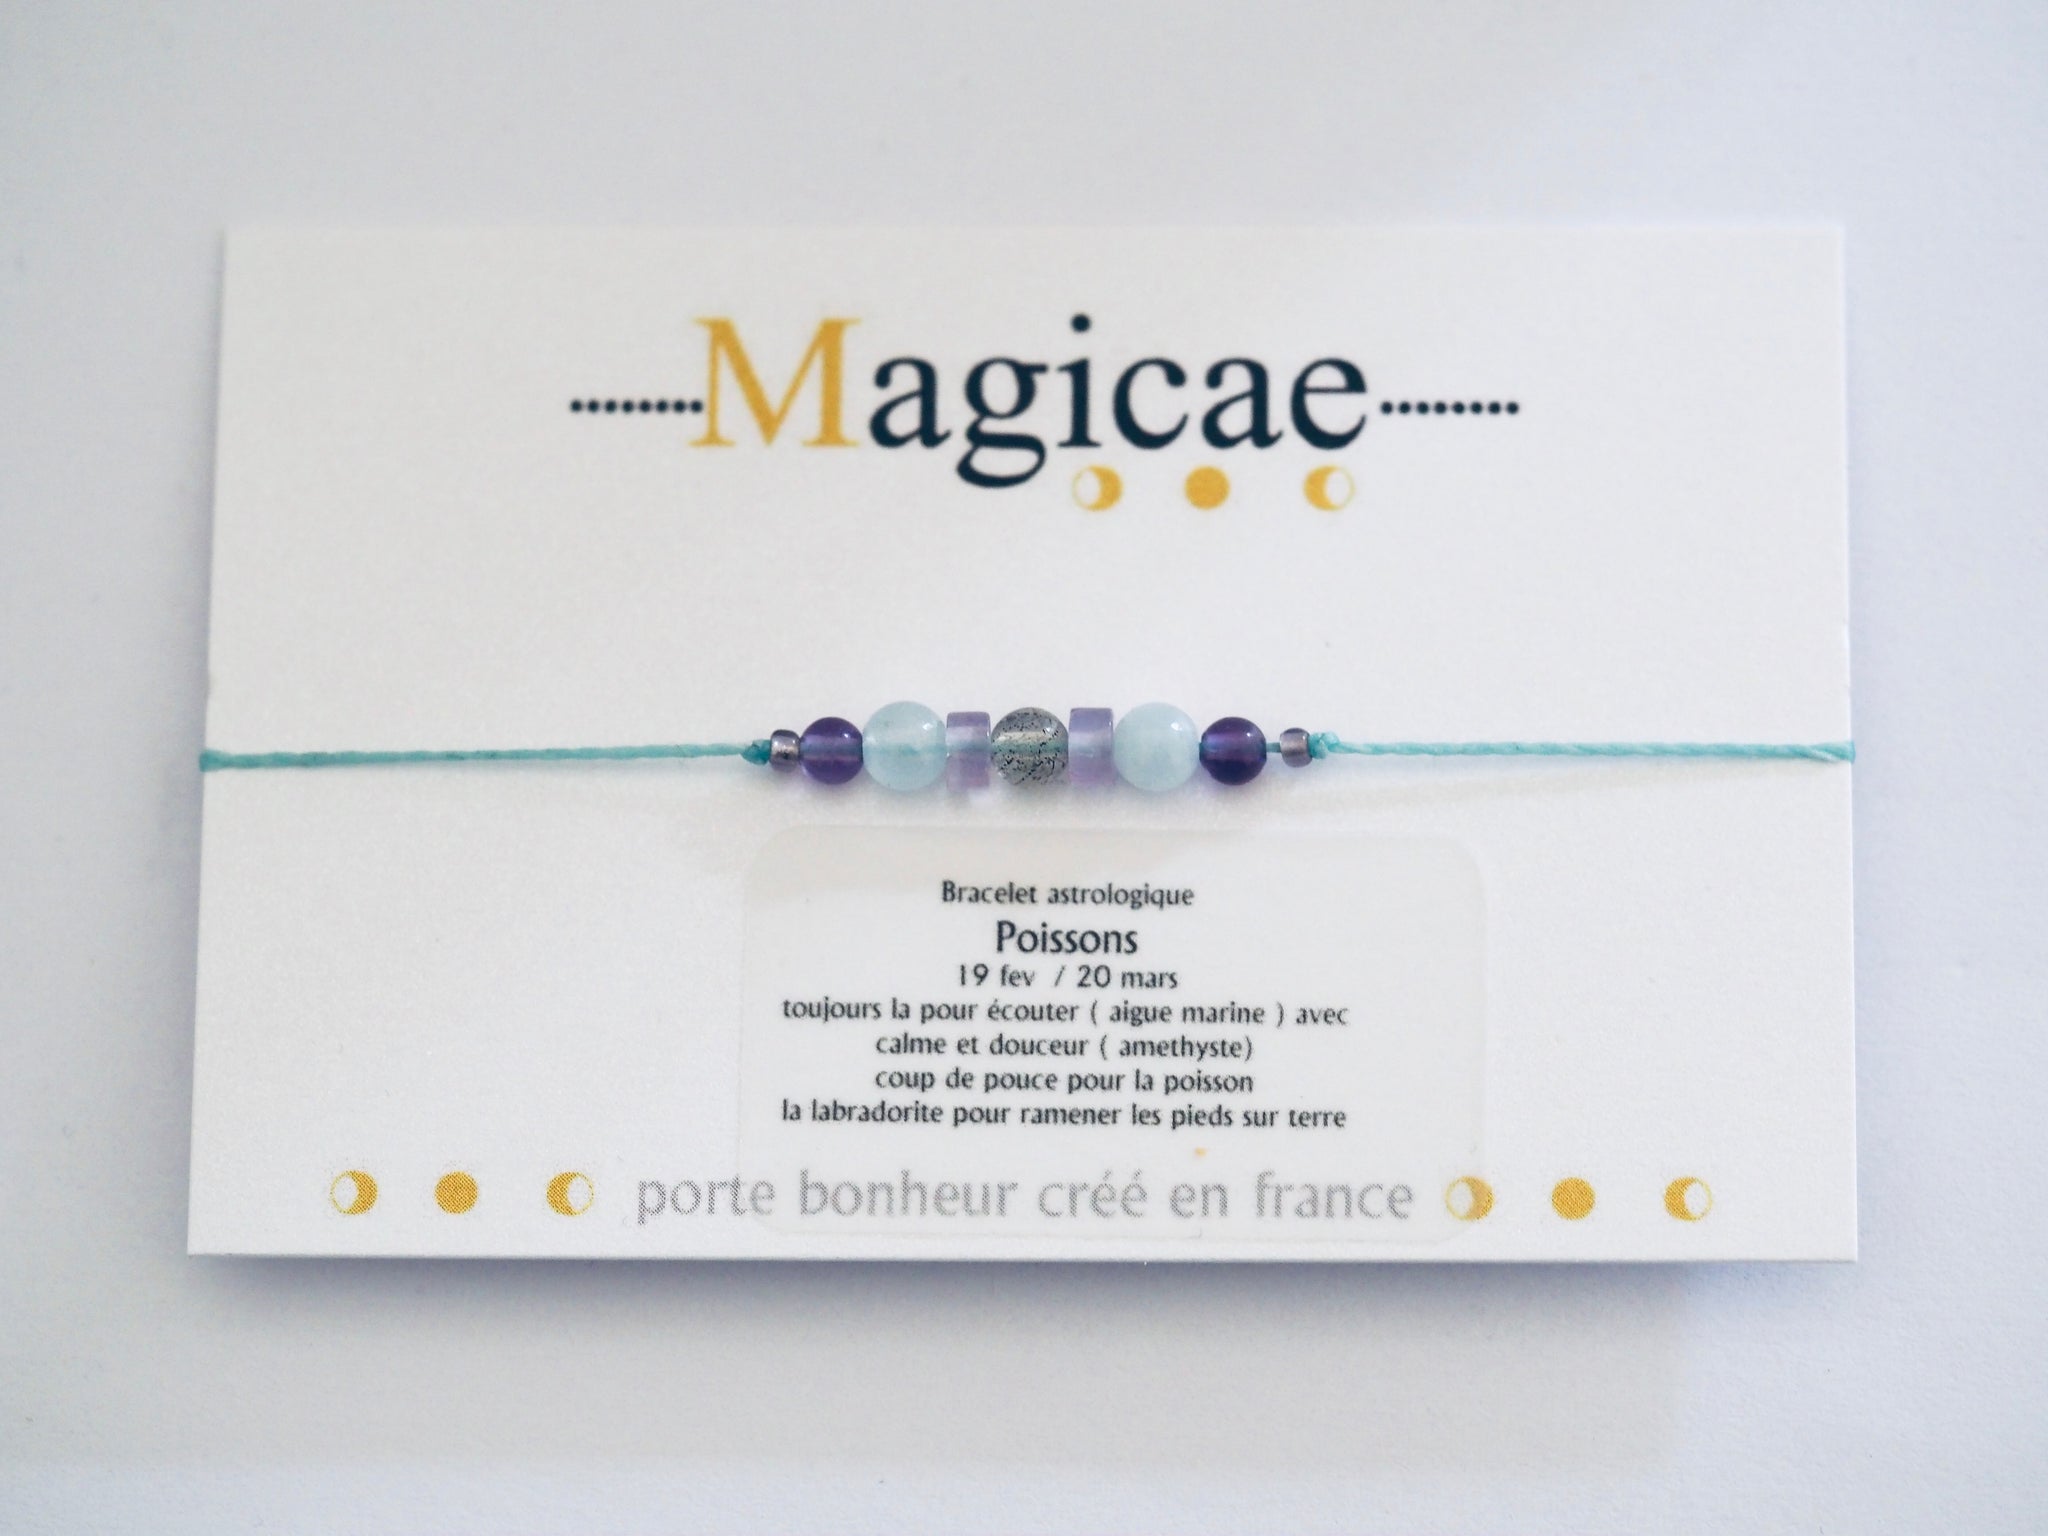 Bracelet astrologique poissons - Magicae